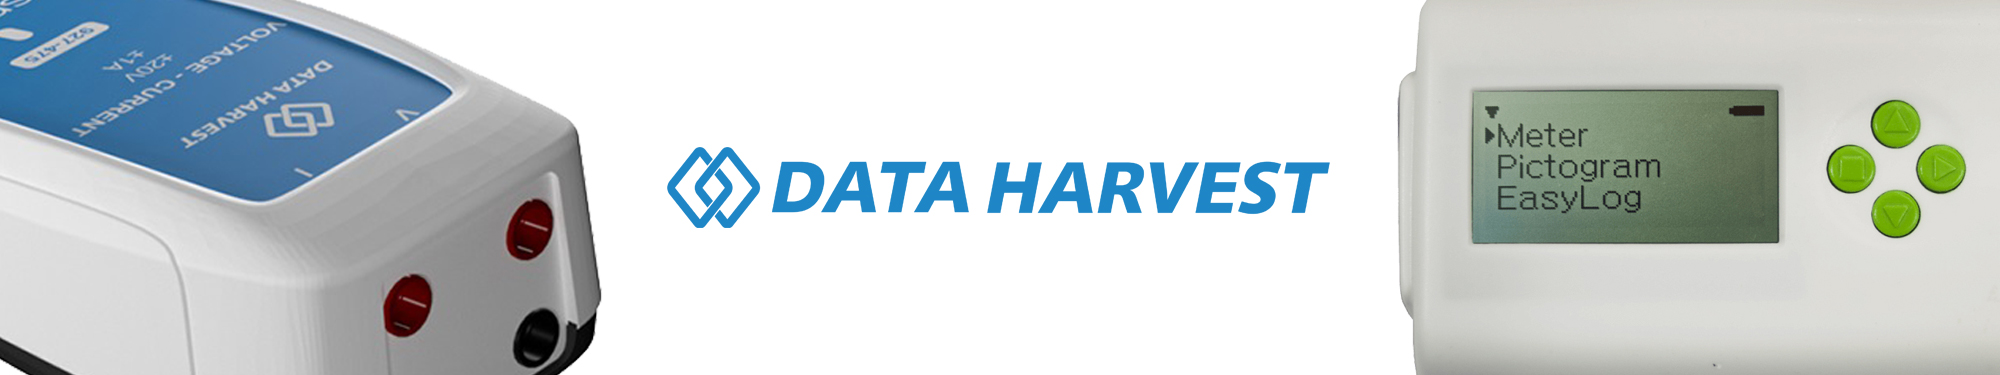 data harvest